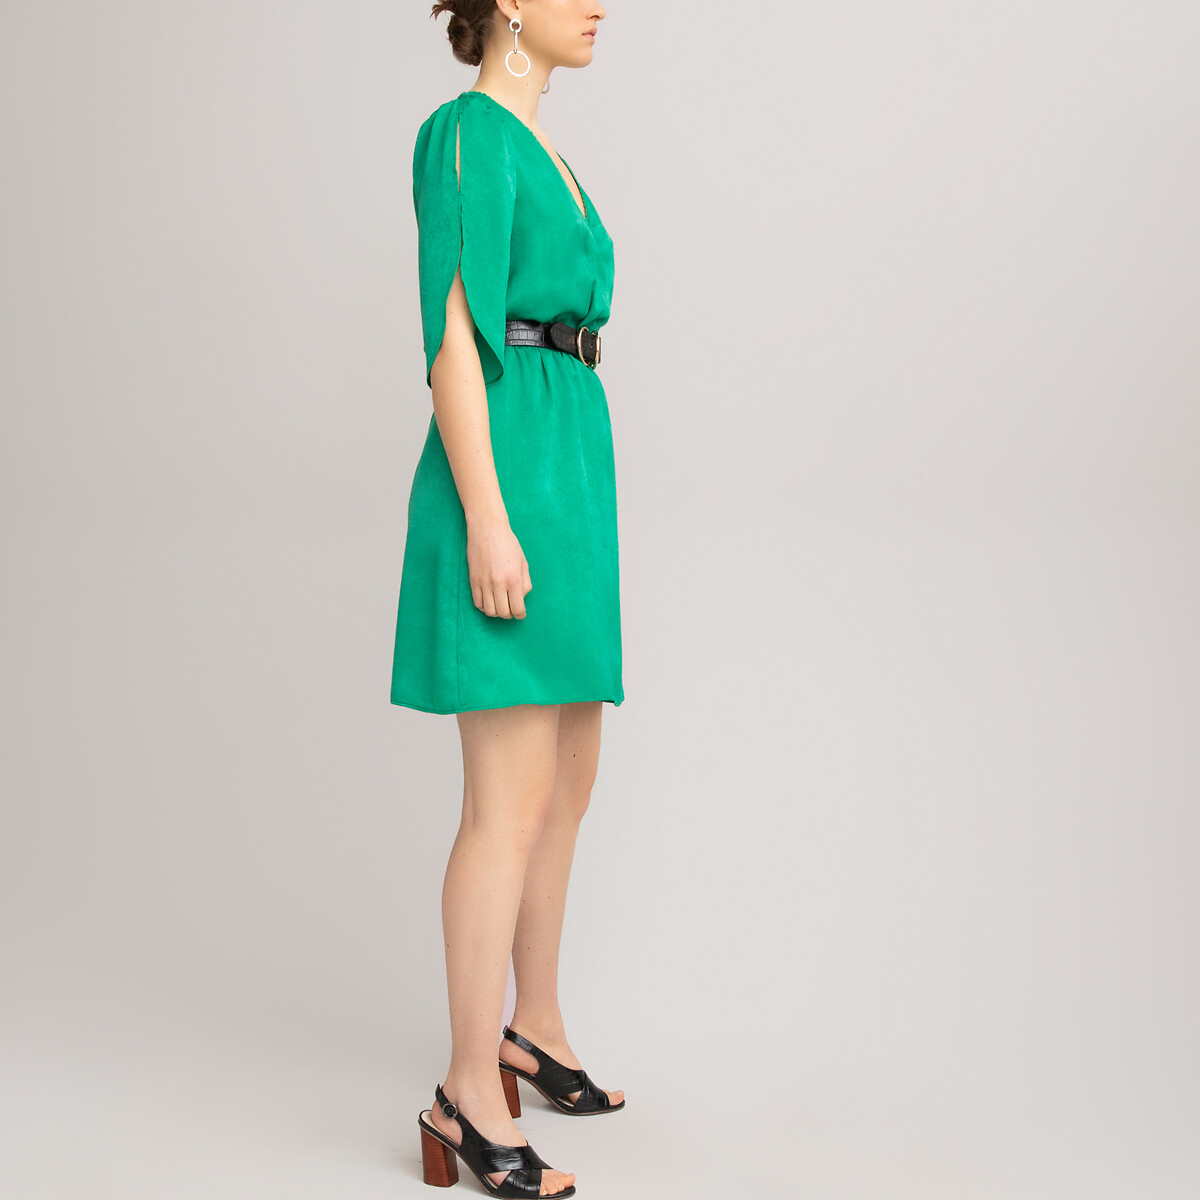 Платье LaRedoute Короткое с запахом короткие рукава 46 (FR) - 52 (RUS) зеленый, размер 46 (FR) - 52 (RUS) Короткое с запахом короткие рукава 46 (FR) - 52 (RUS) зеленый - фото 2